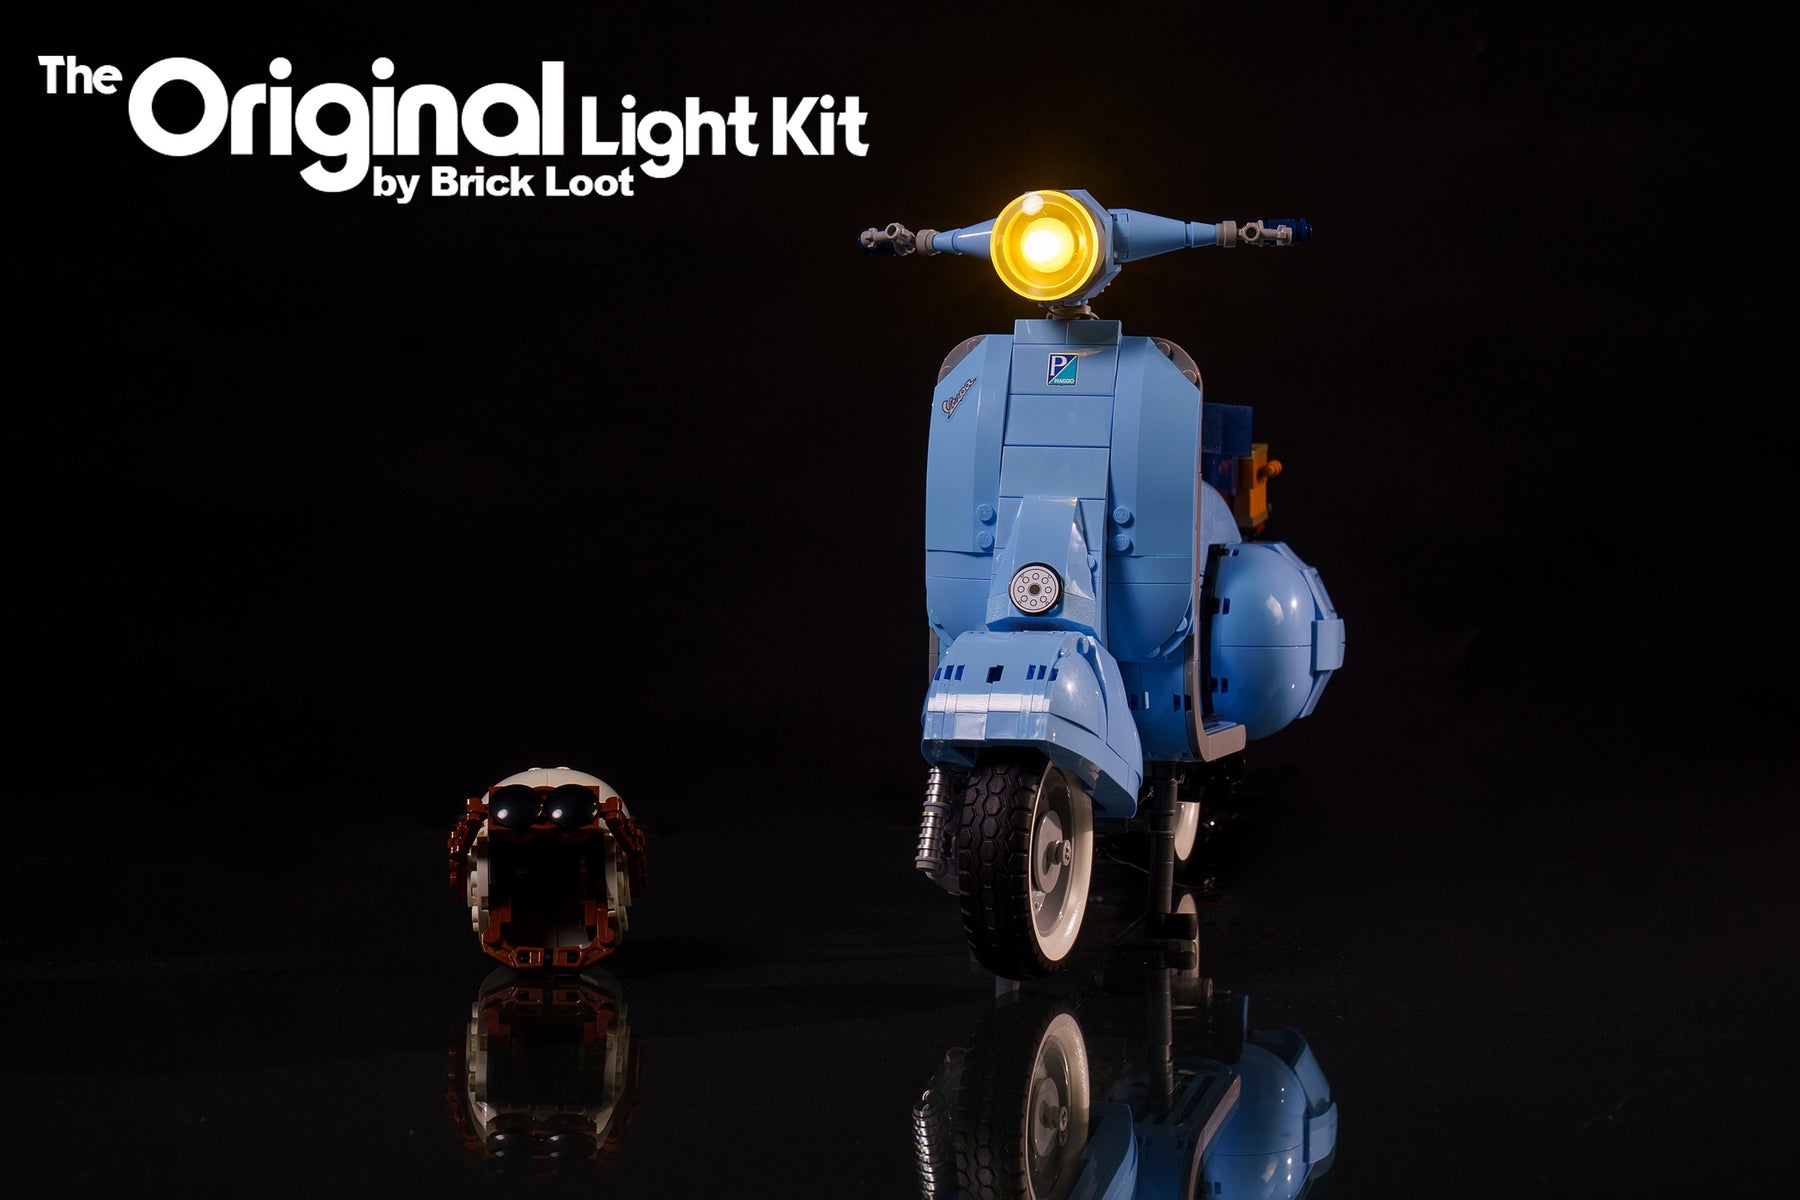 LED Light Kit for Lego Vespa 125 10298 Toy Set India